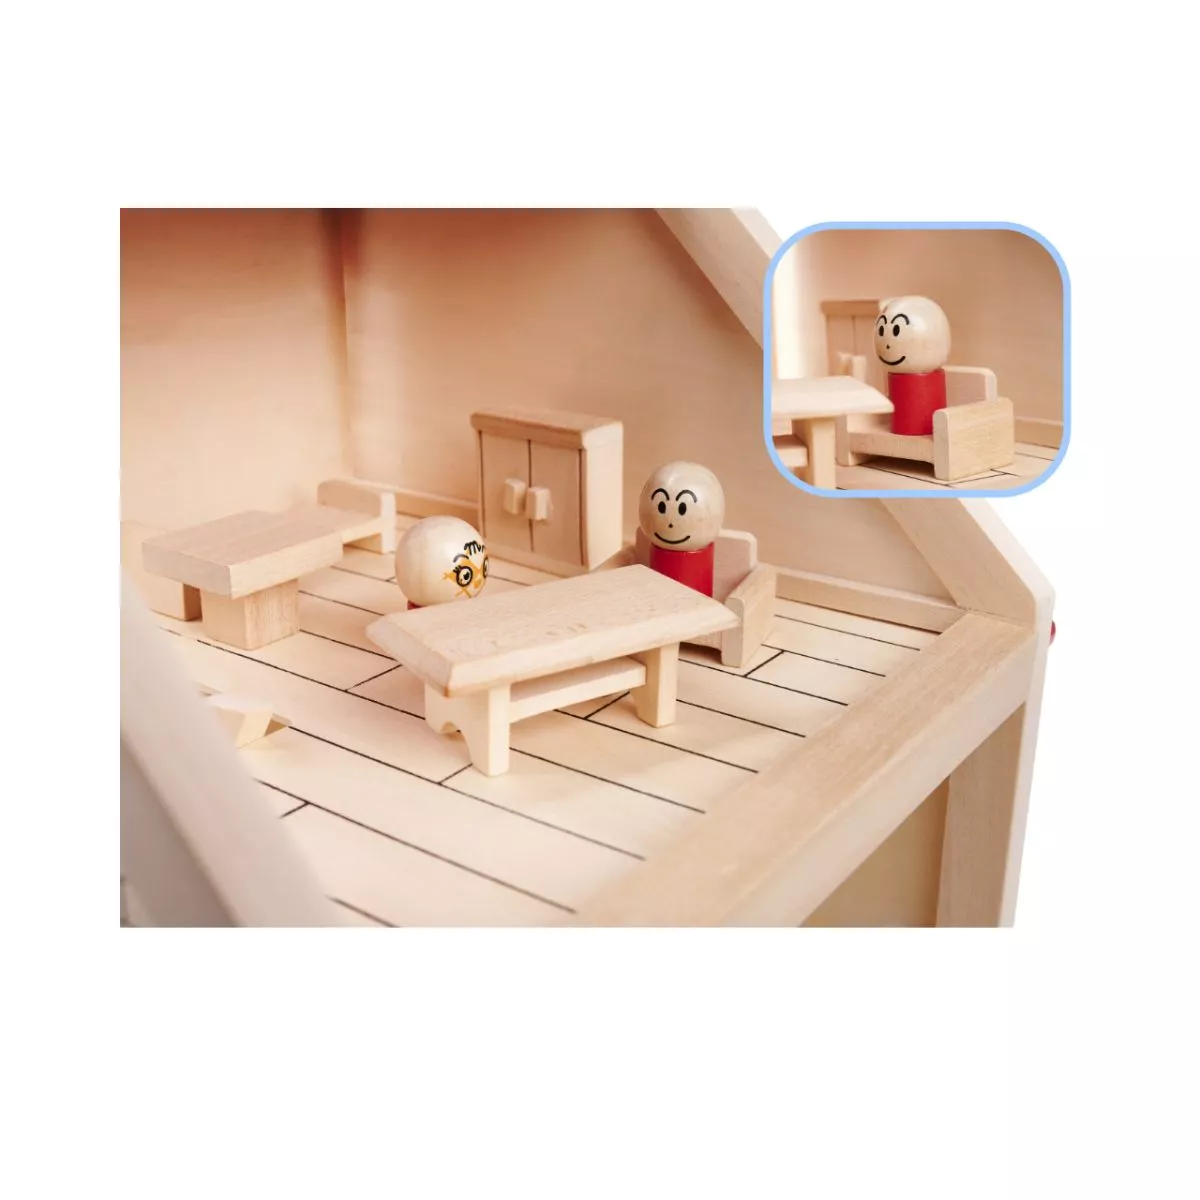 Casuta de papusi din lemn cu mobila si figurine, 40 cm 3